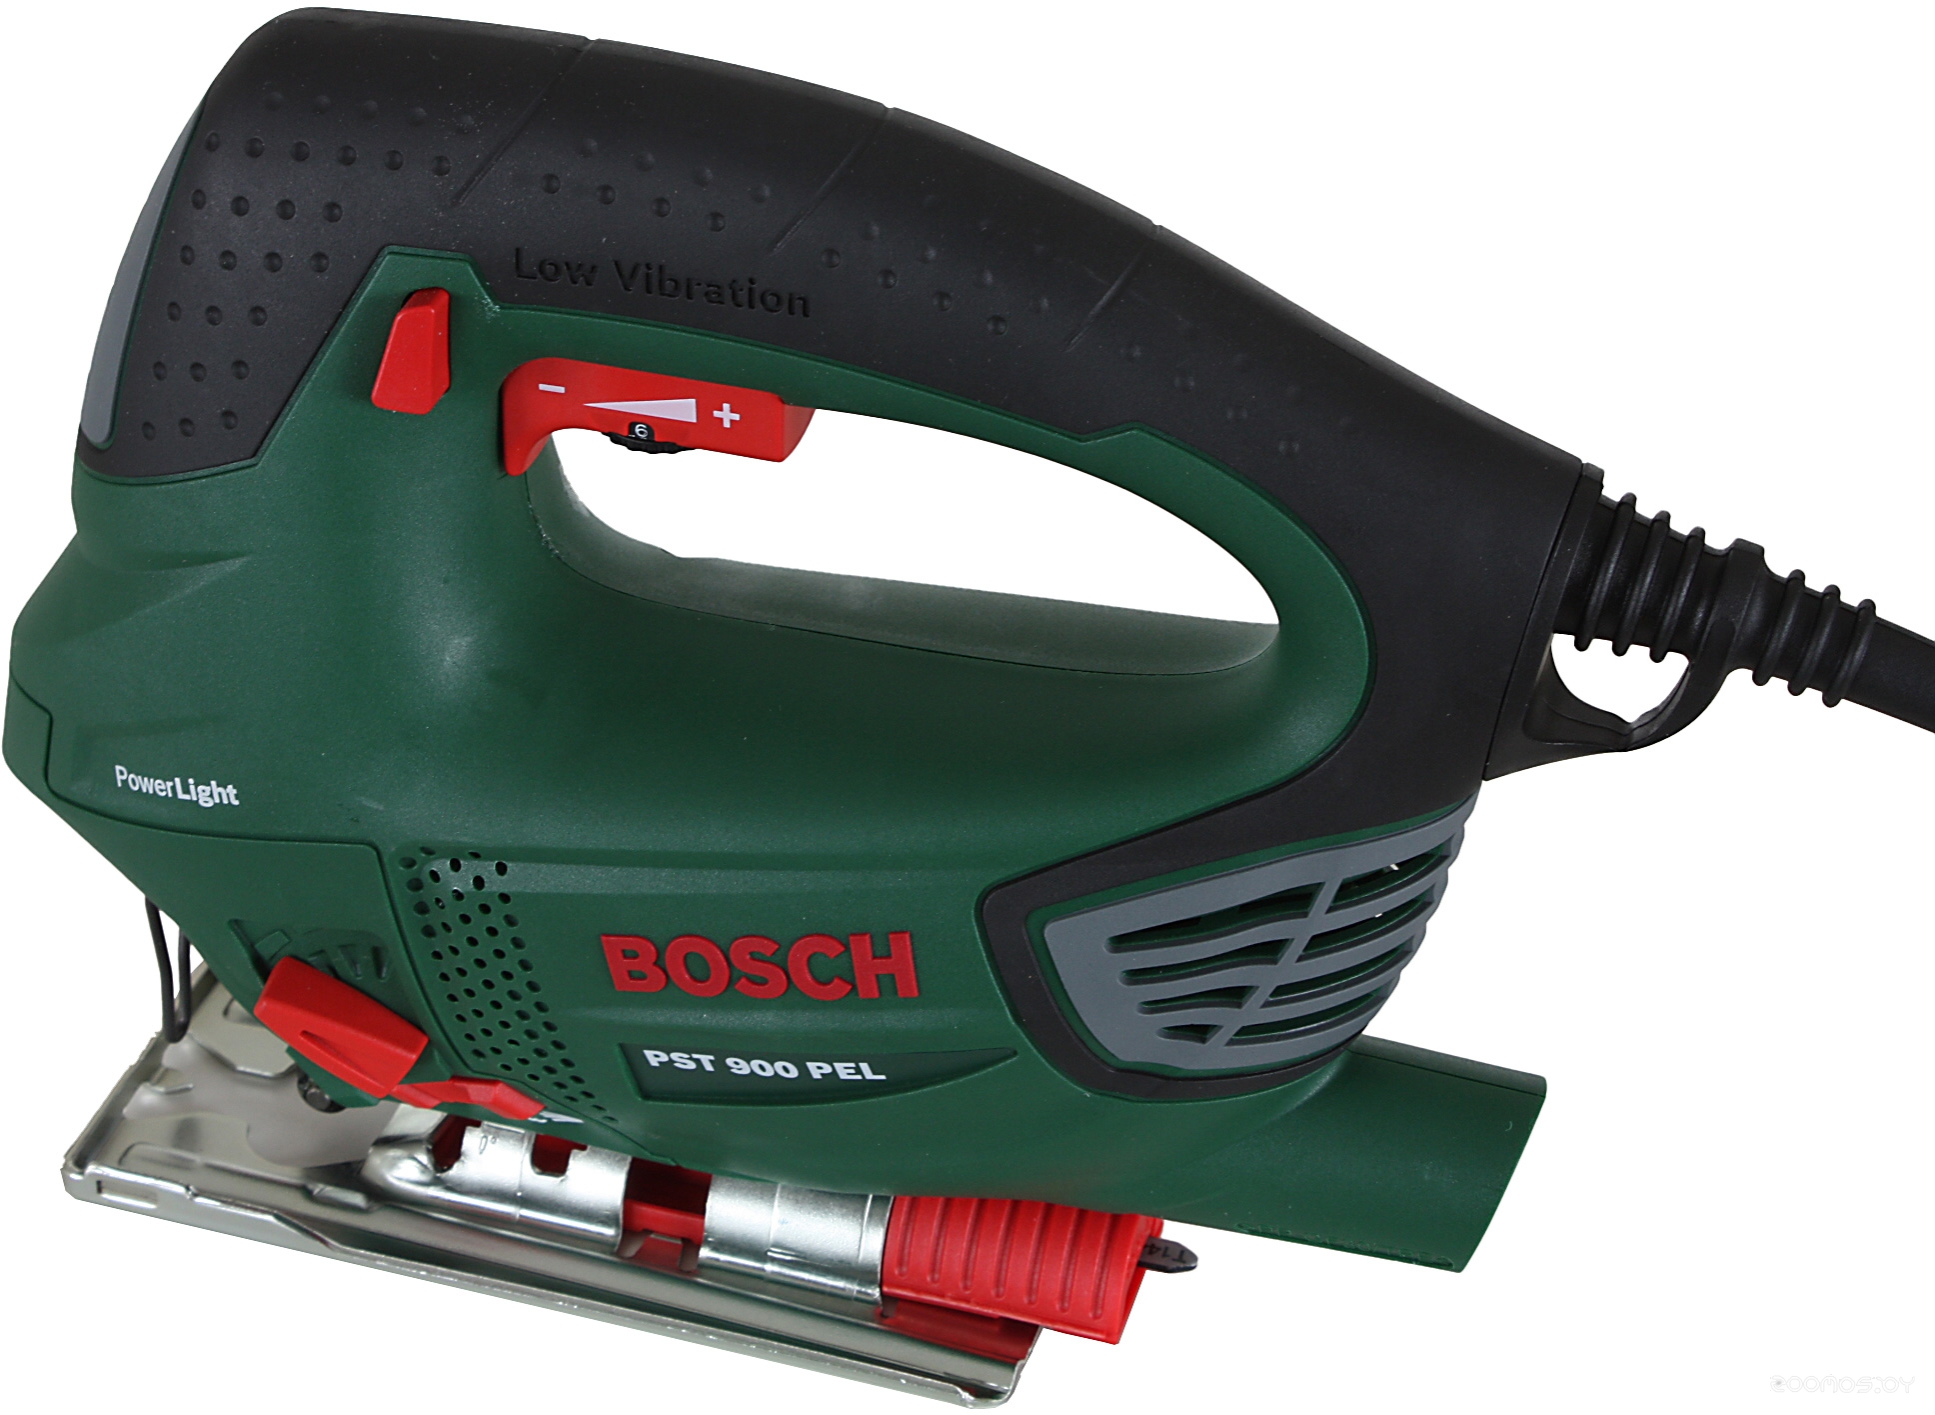  Bosch PST 900 PEL     